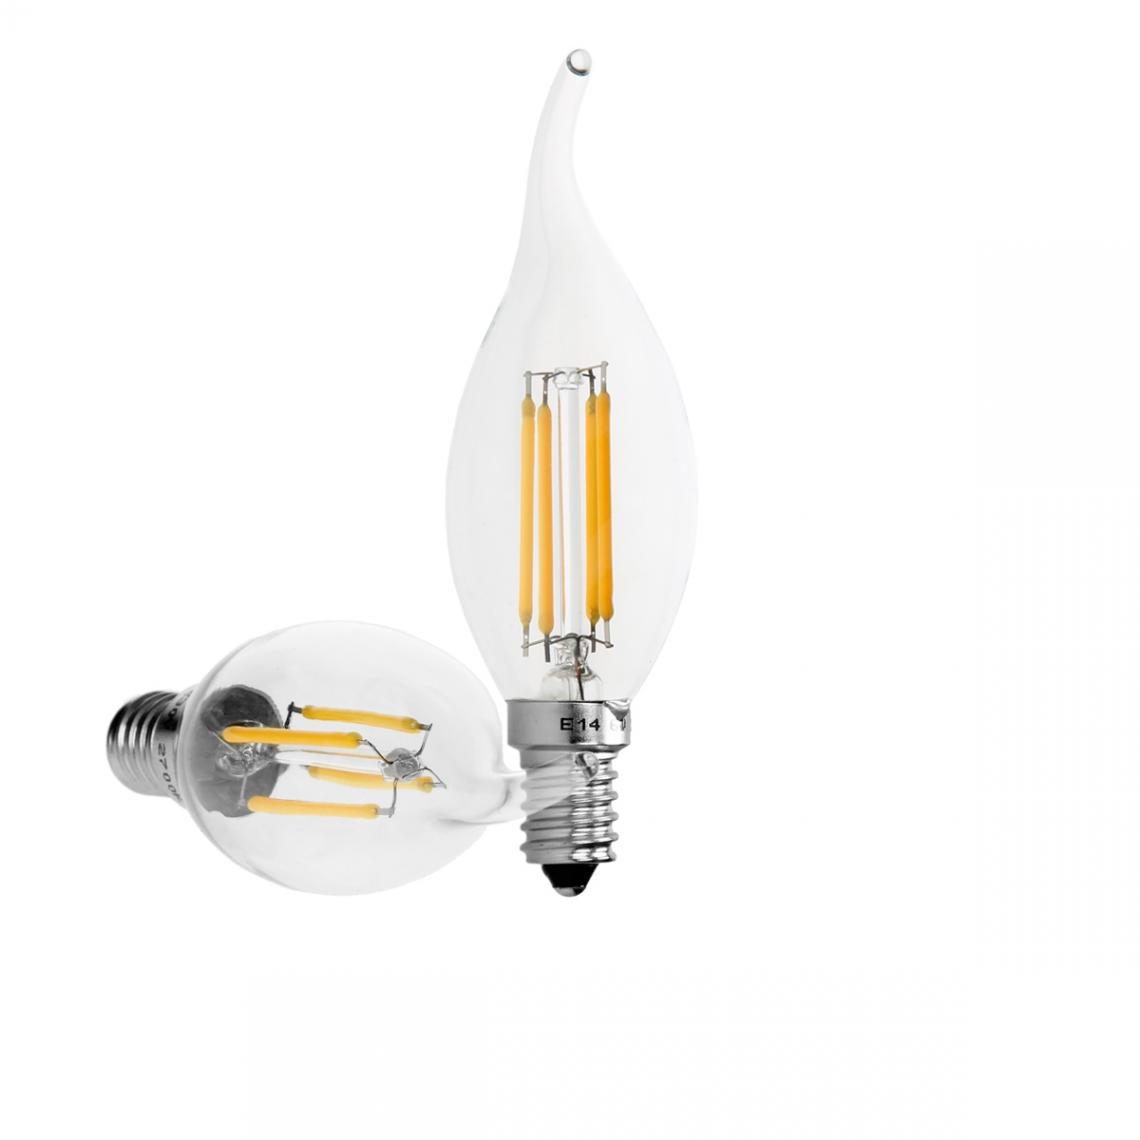 Ecd Germany - 20 x Lampe LED rafale de vent filament de bougie E14 4W blanc chaud - Ampoules LED